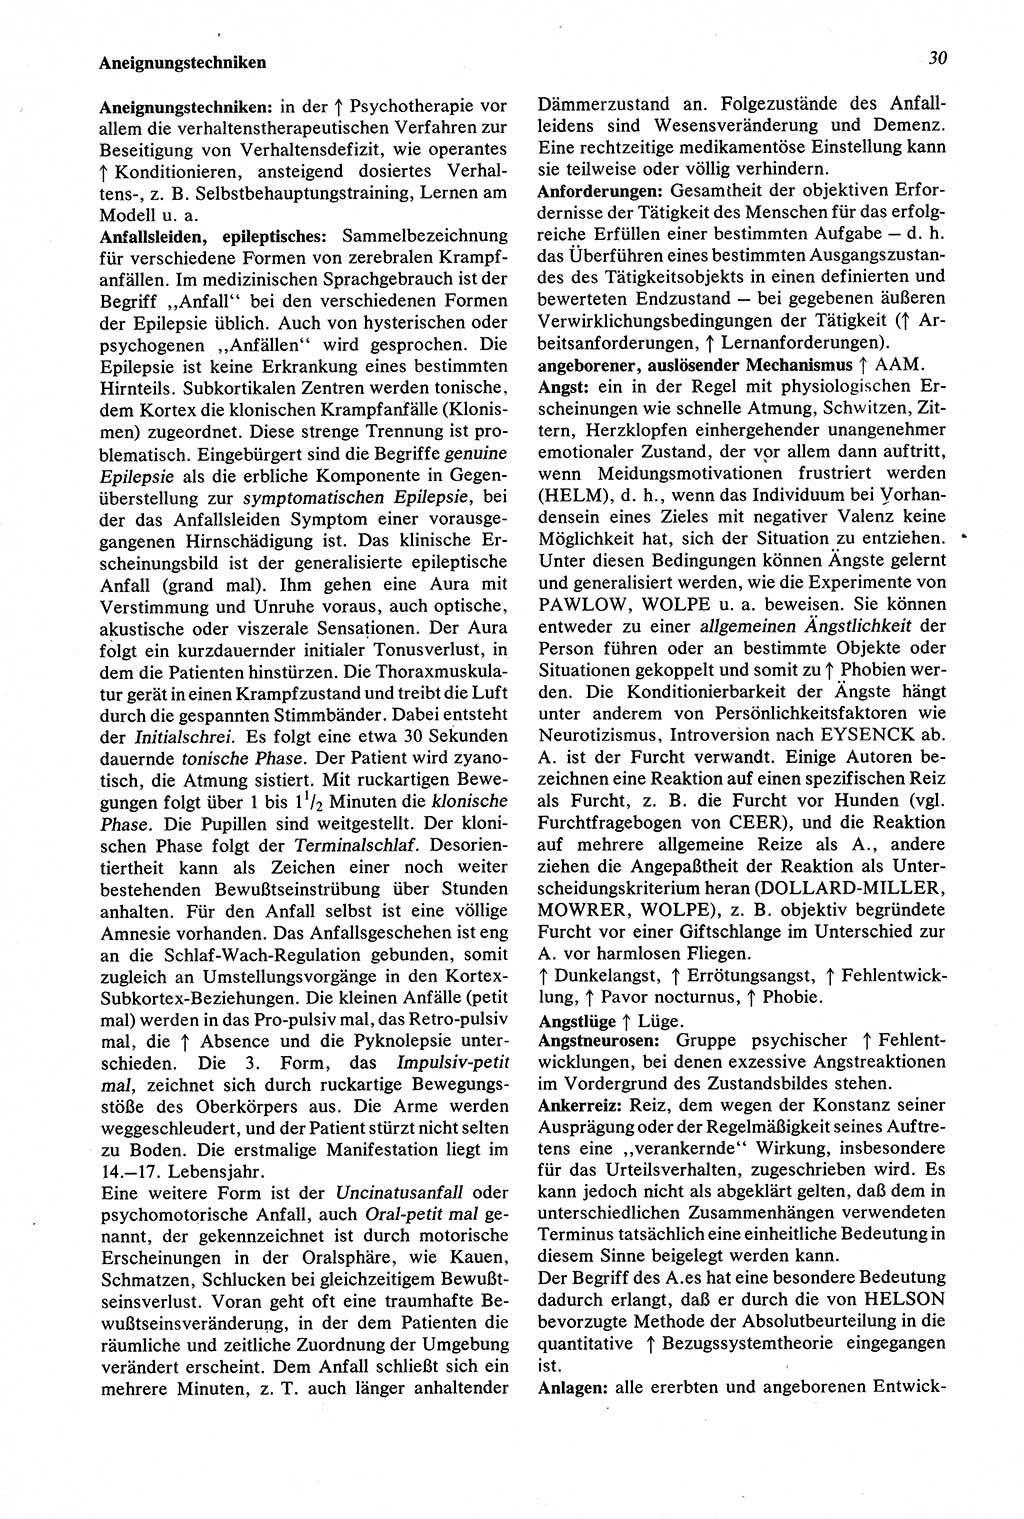 Wörterbuch der Psychologie [Deutsche Demokratische Republik (DDR)] 1976, Seite 30 (Wb. Psych. DDR 1976, S. 30)